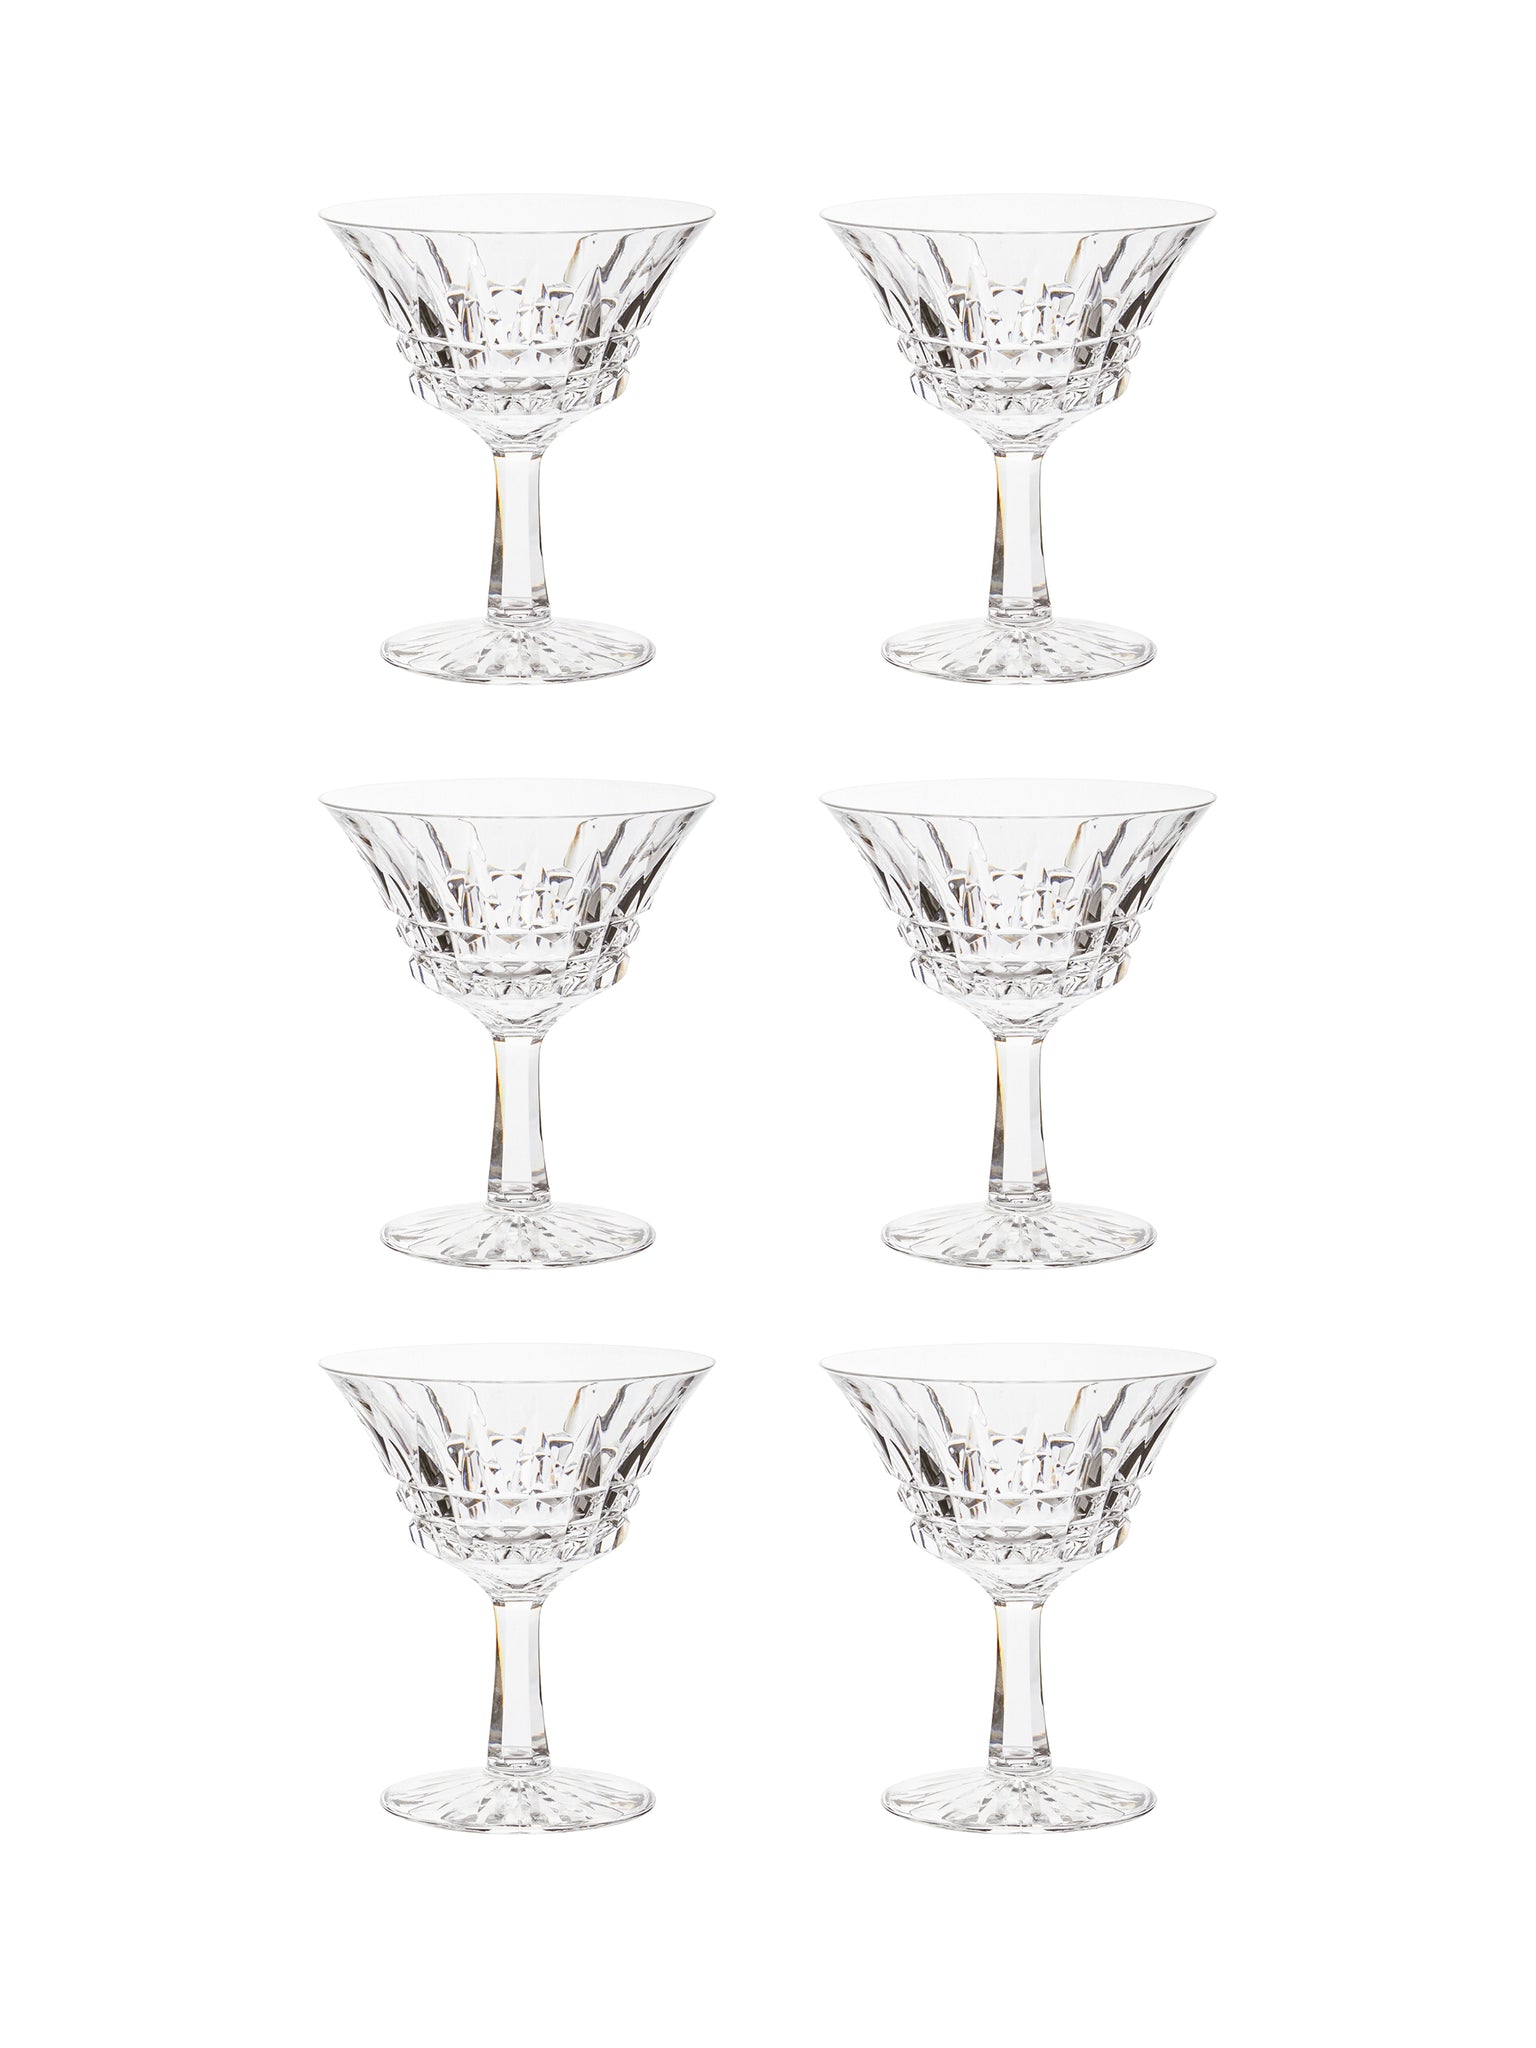 Vintage 1950s Italian Martini Crystal Glasses Set of Six Weston Table